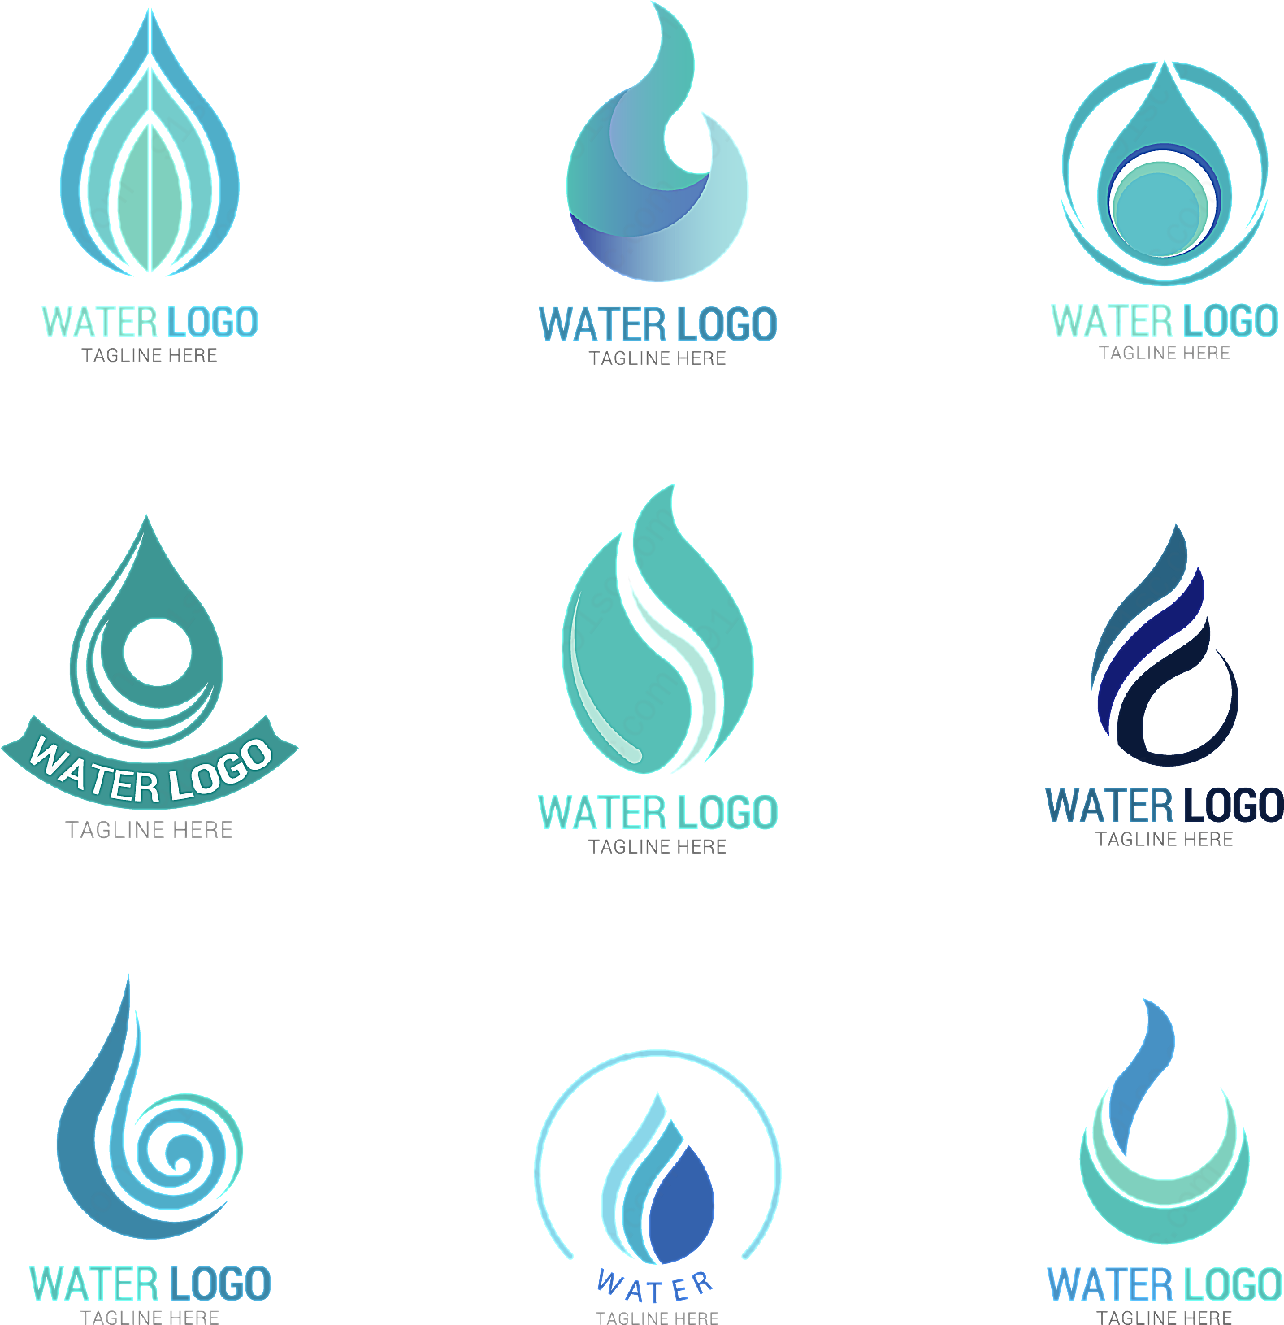 水滴形状标志矢量logo图形